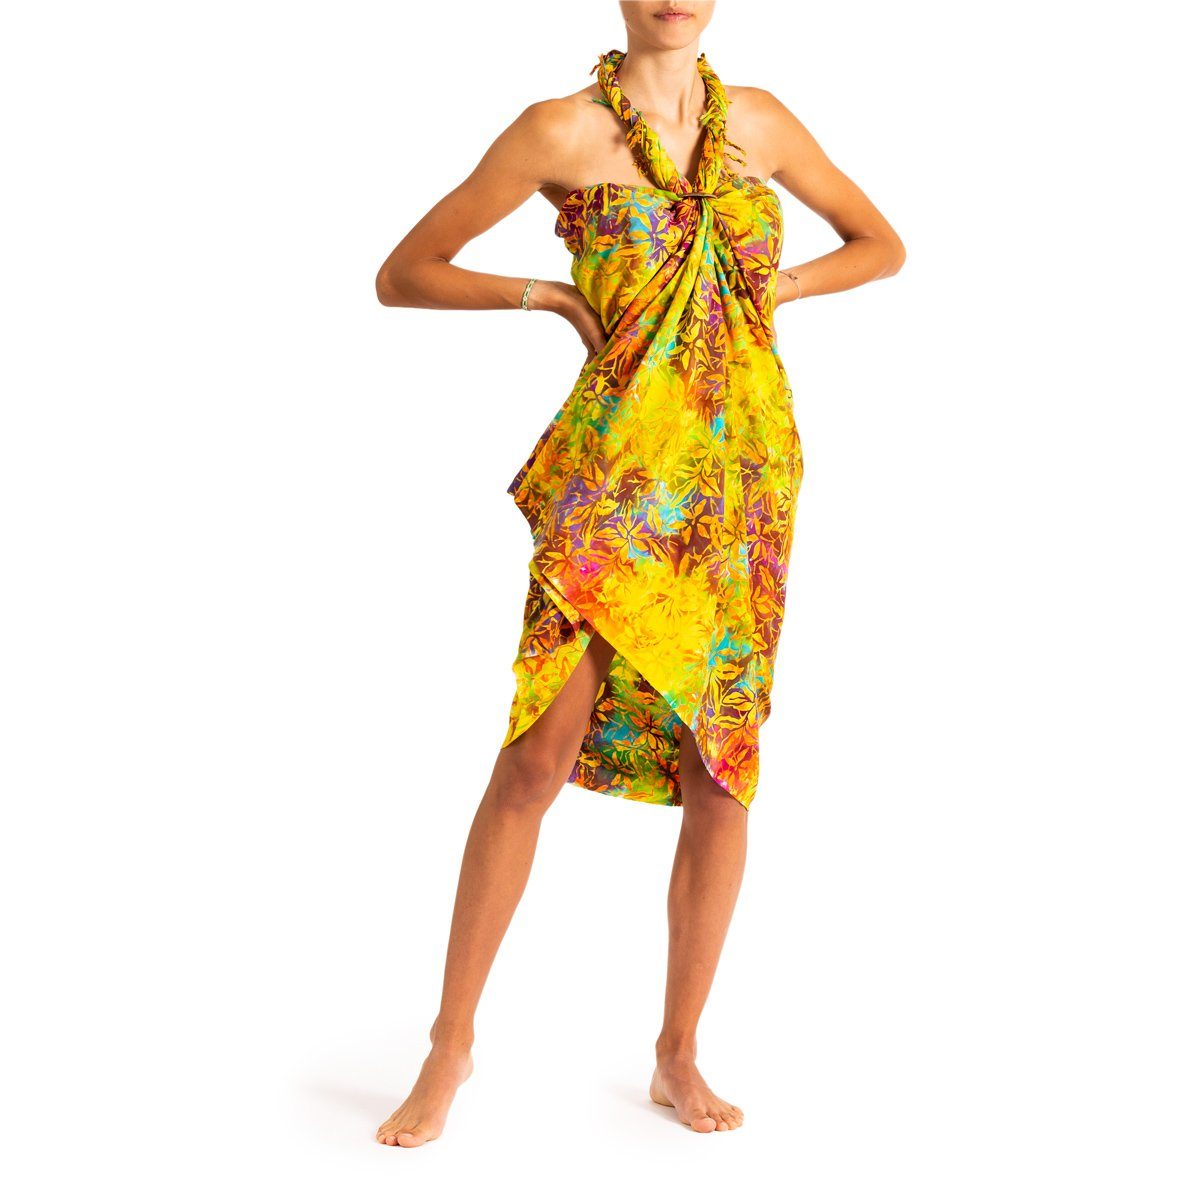 PANASIAM Pareo Sarong Wachsbatik Bunttöne aus hochwertiger Viskose Strandtuch, Strandkleid Bikini Cover-up Tuch für den Strand Schultertuch Halstuch B706 pacific